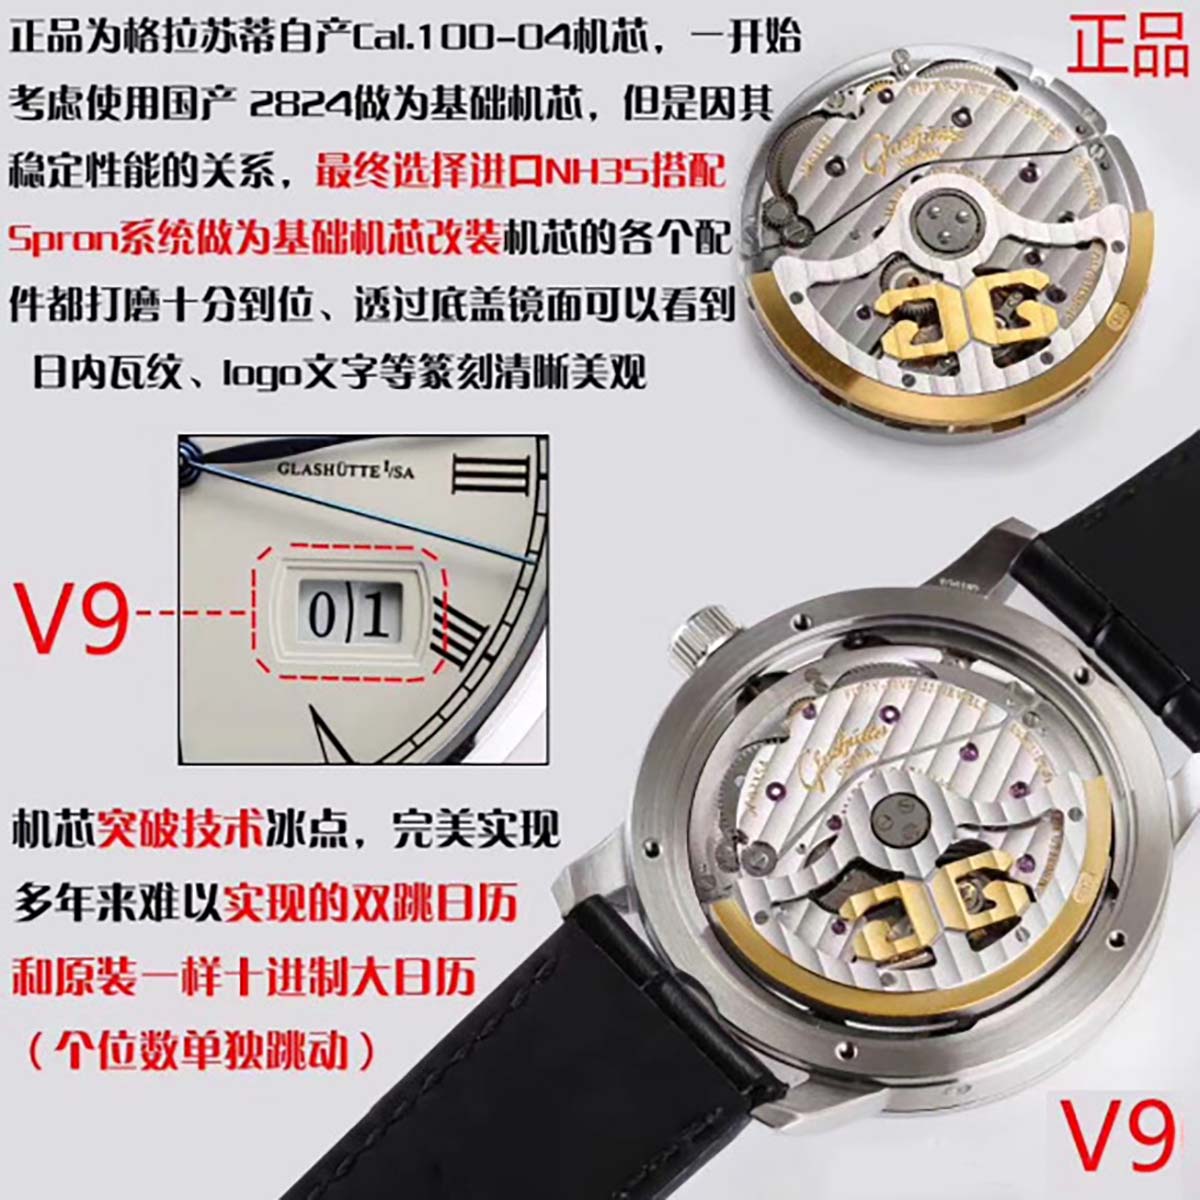 V9厂格拉苏蒂原创议员大日历月相复刻腕表对比正品图文评测插图7